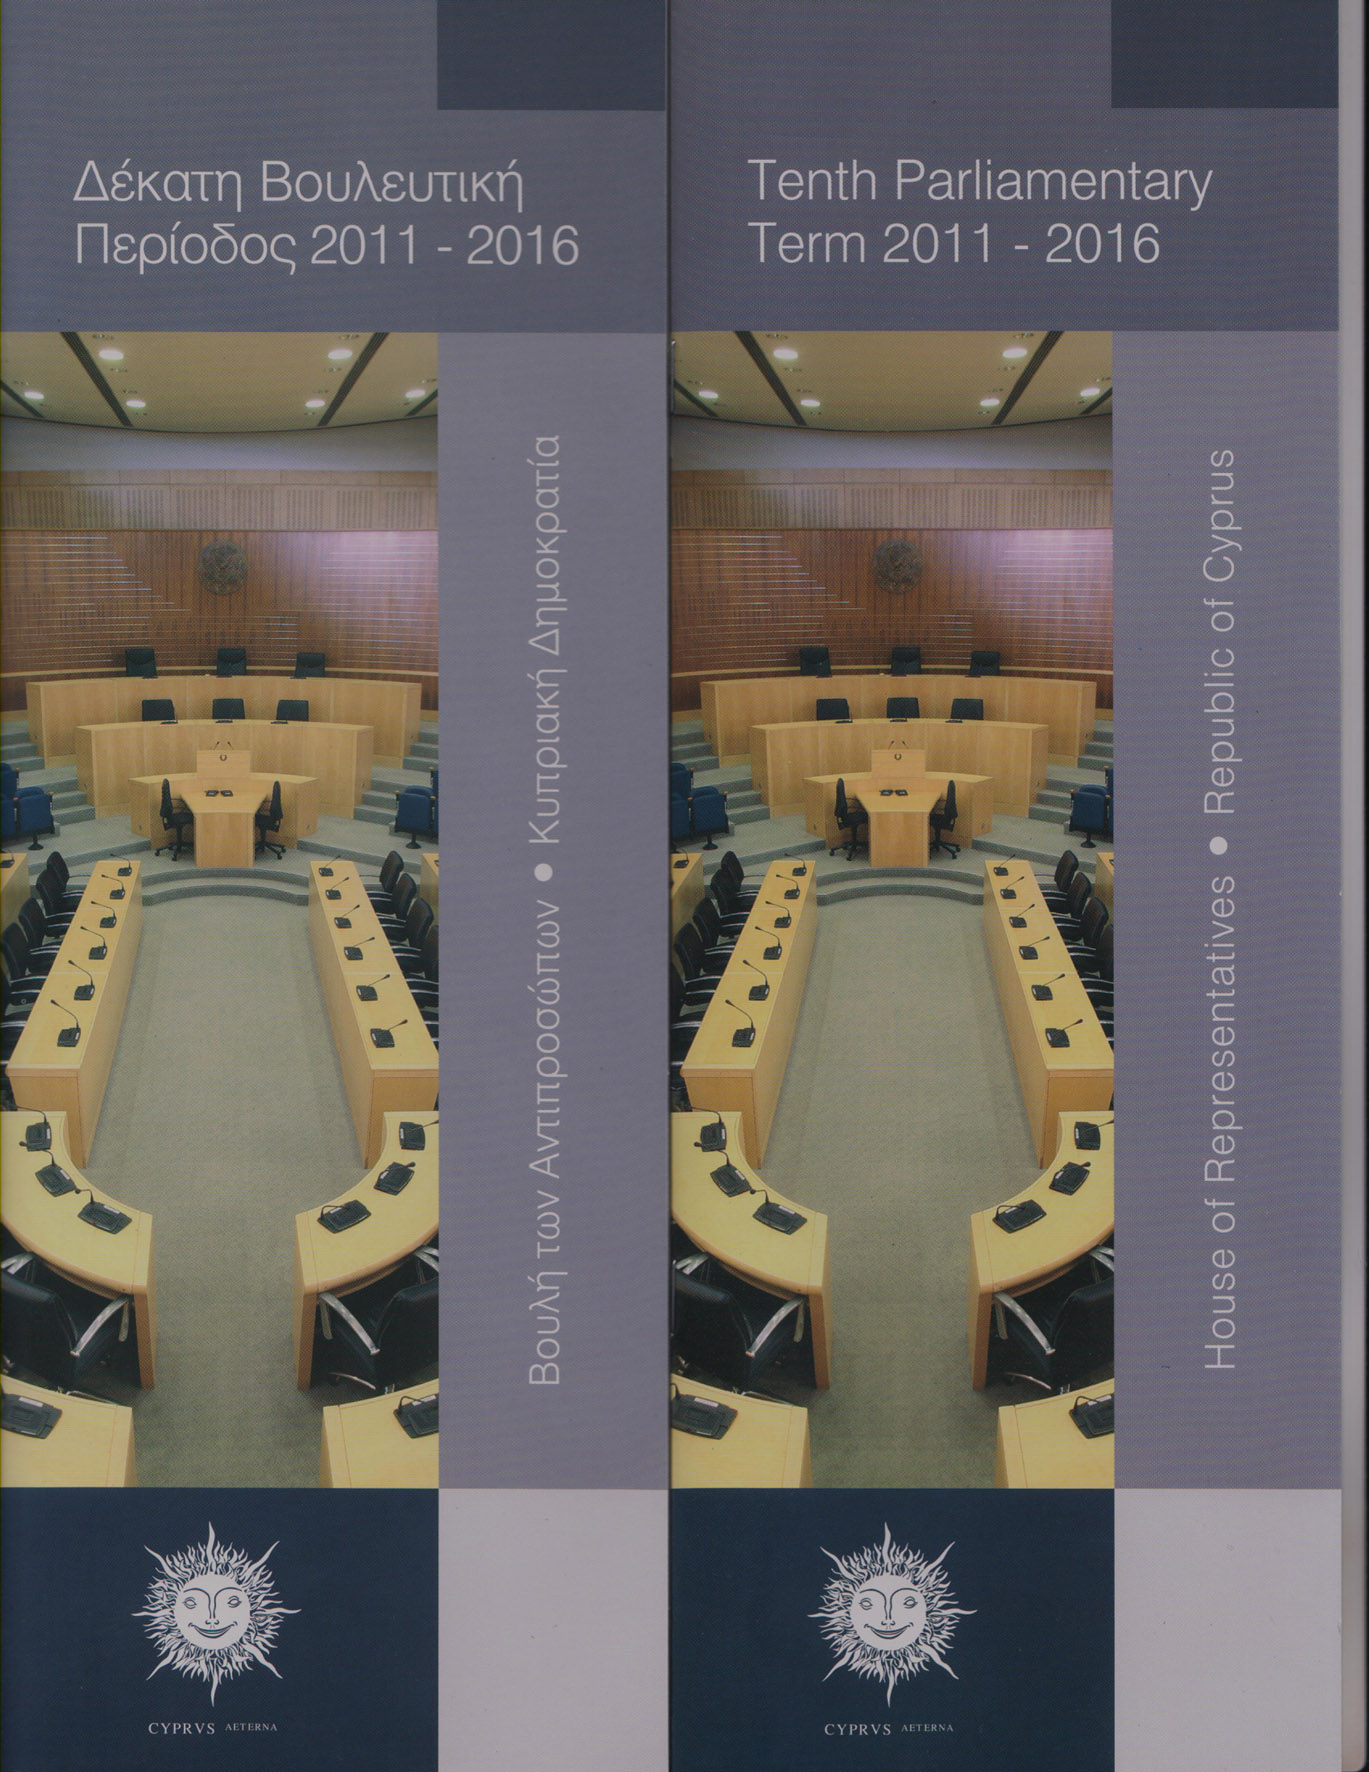 Δέκατη Βουλευτική Περίοδος 2011-2016 / Tenth Parliamentary Term 2011-2016